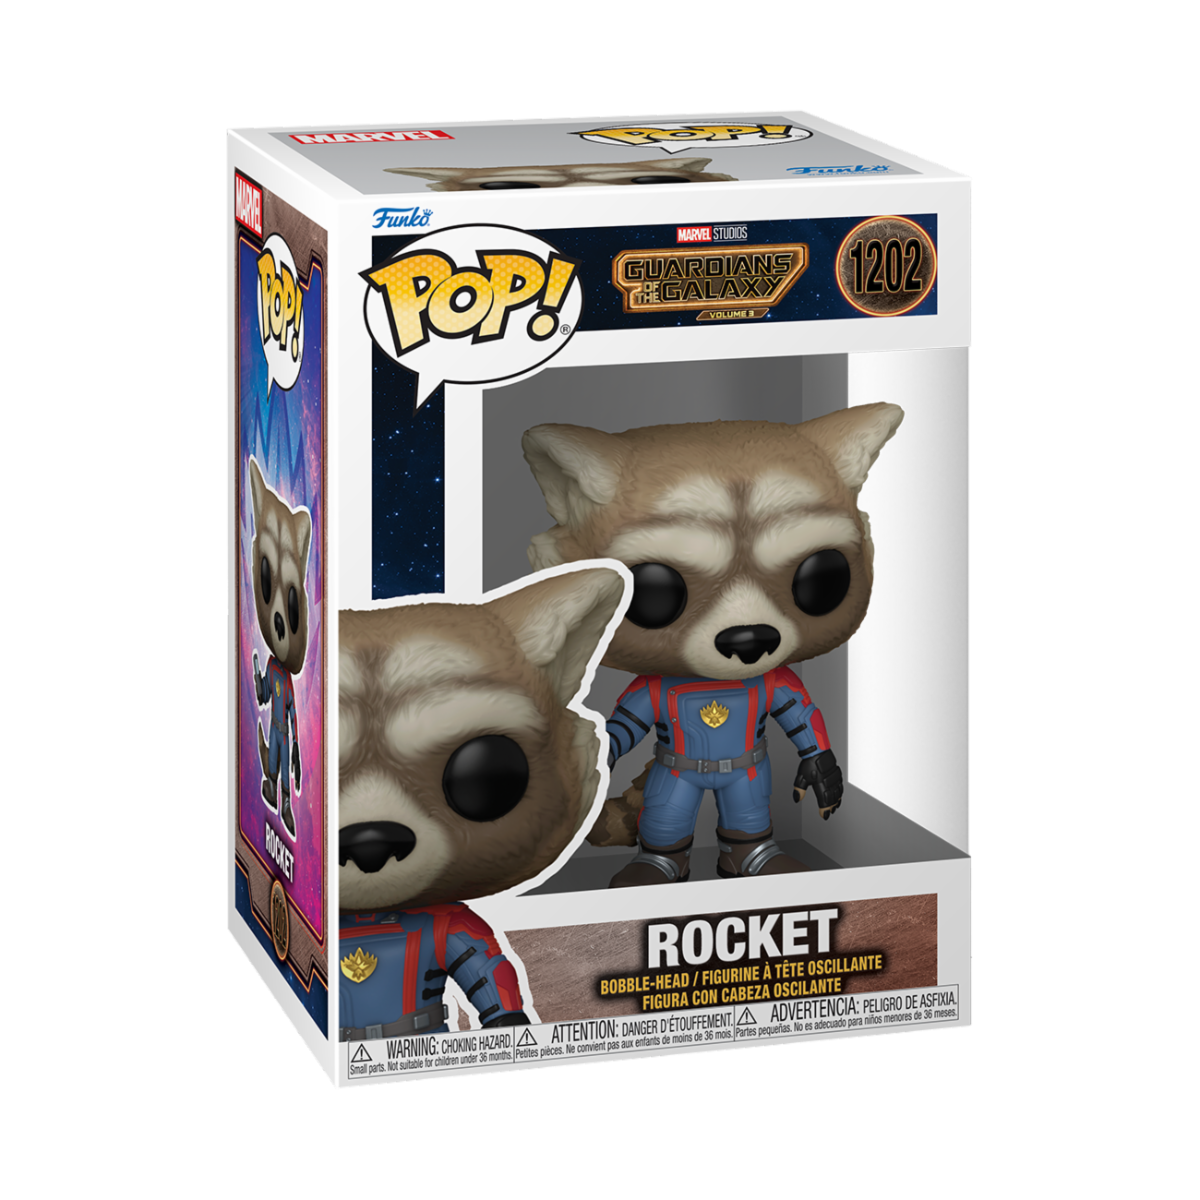 Rocket Funko Pop 1202.